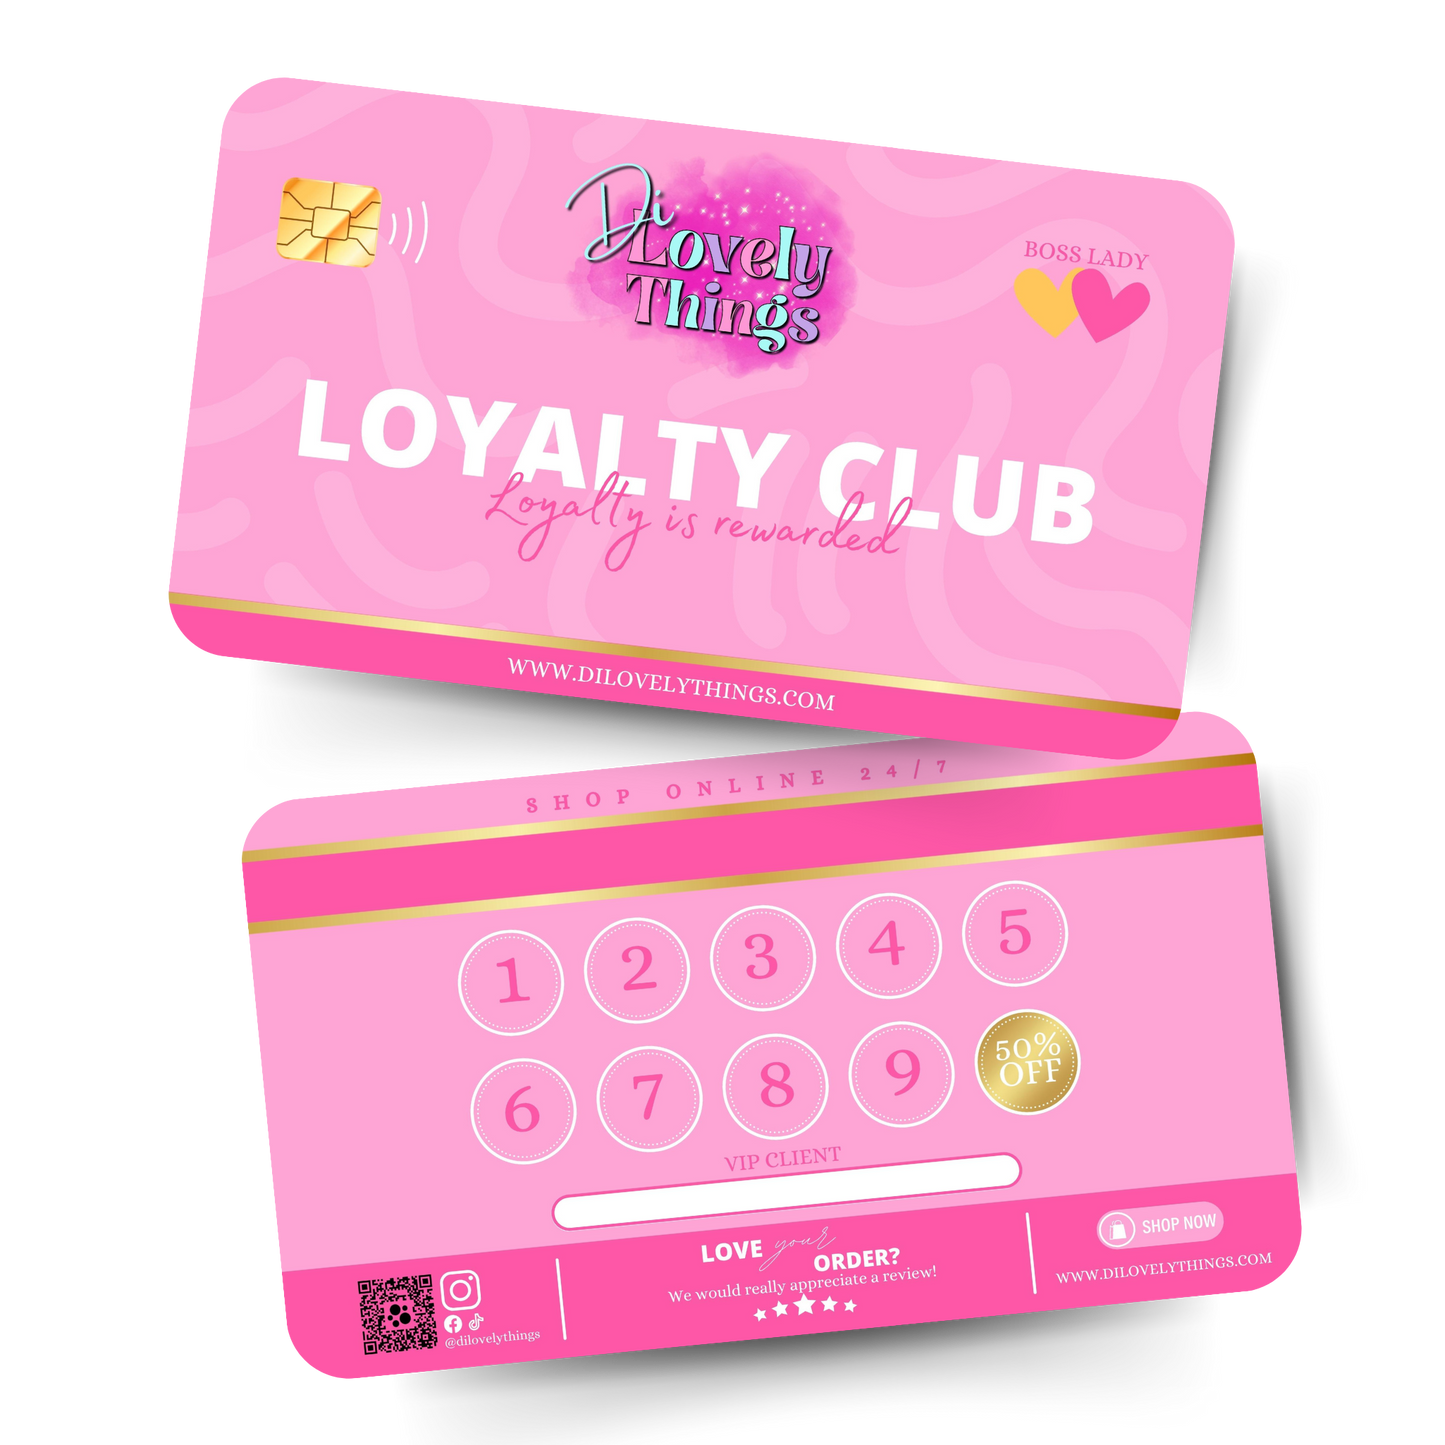 Loyalty Club Cards